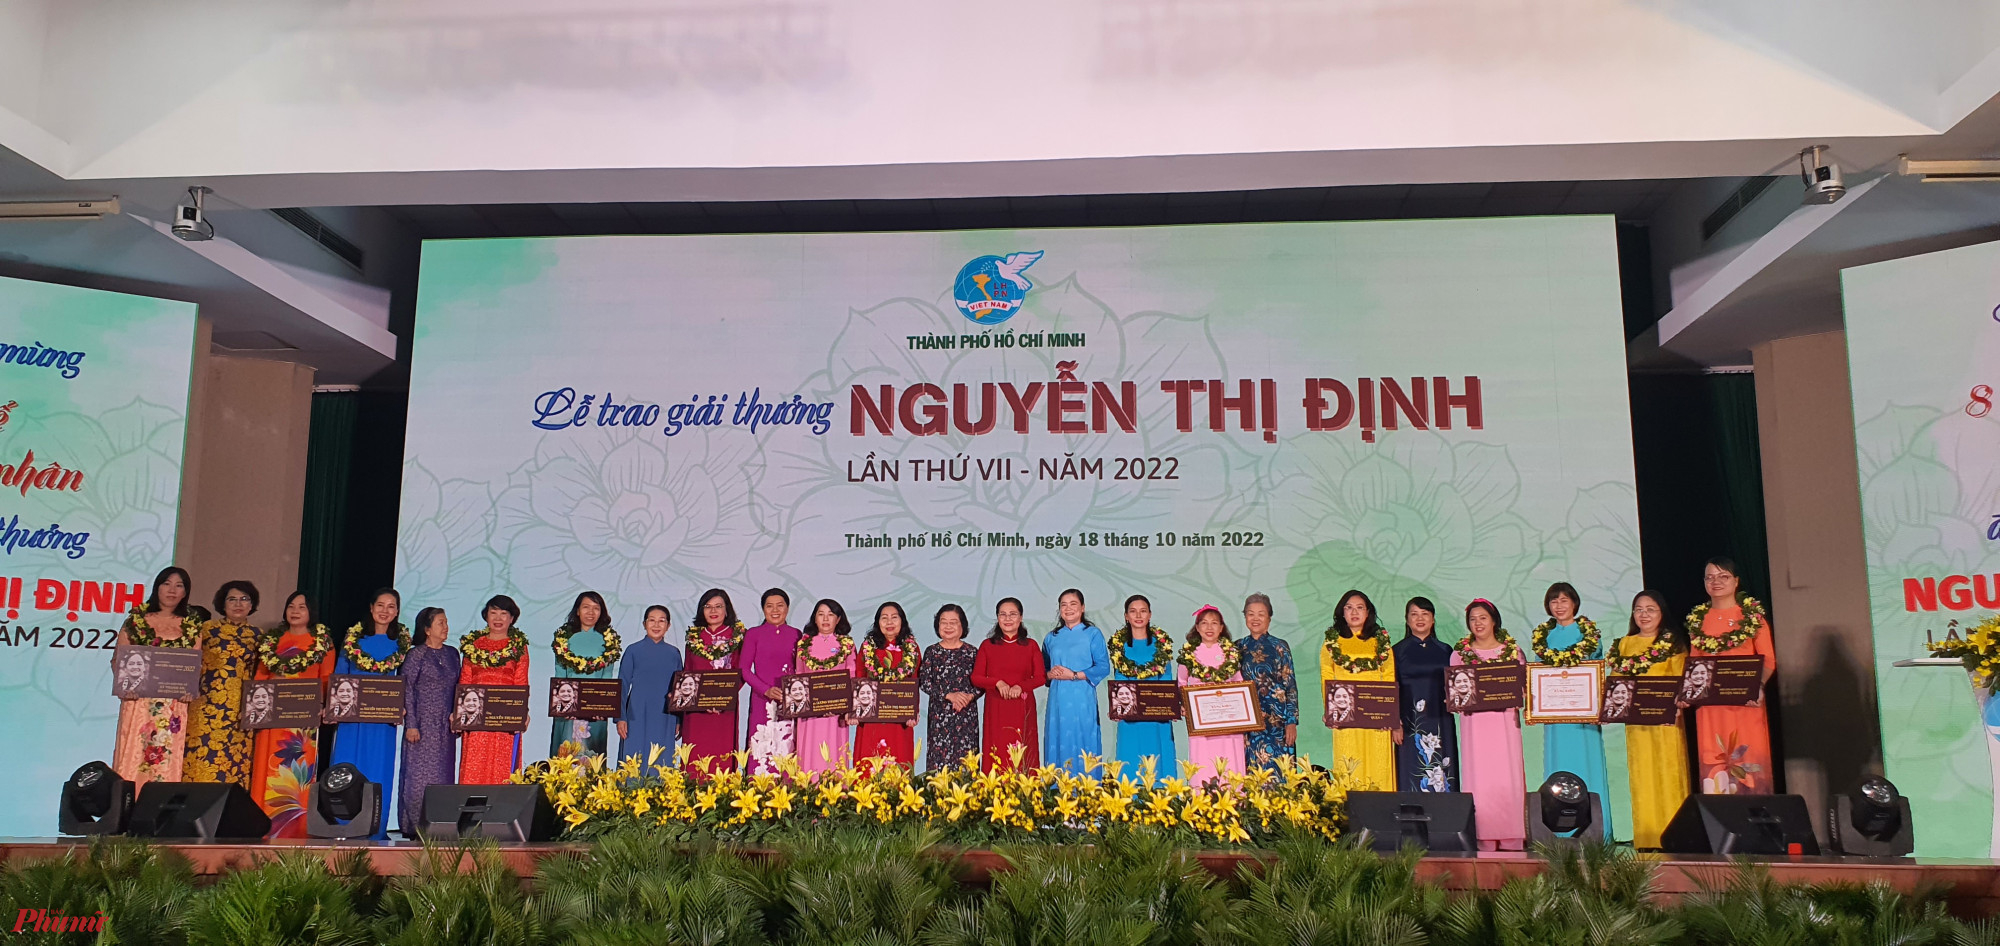 Lễ trao giải thưởng Nguyễn Thị Định lần thứ VII - năm 2022 do Hội LHPN TPHCM tổ chức